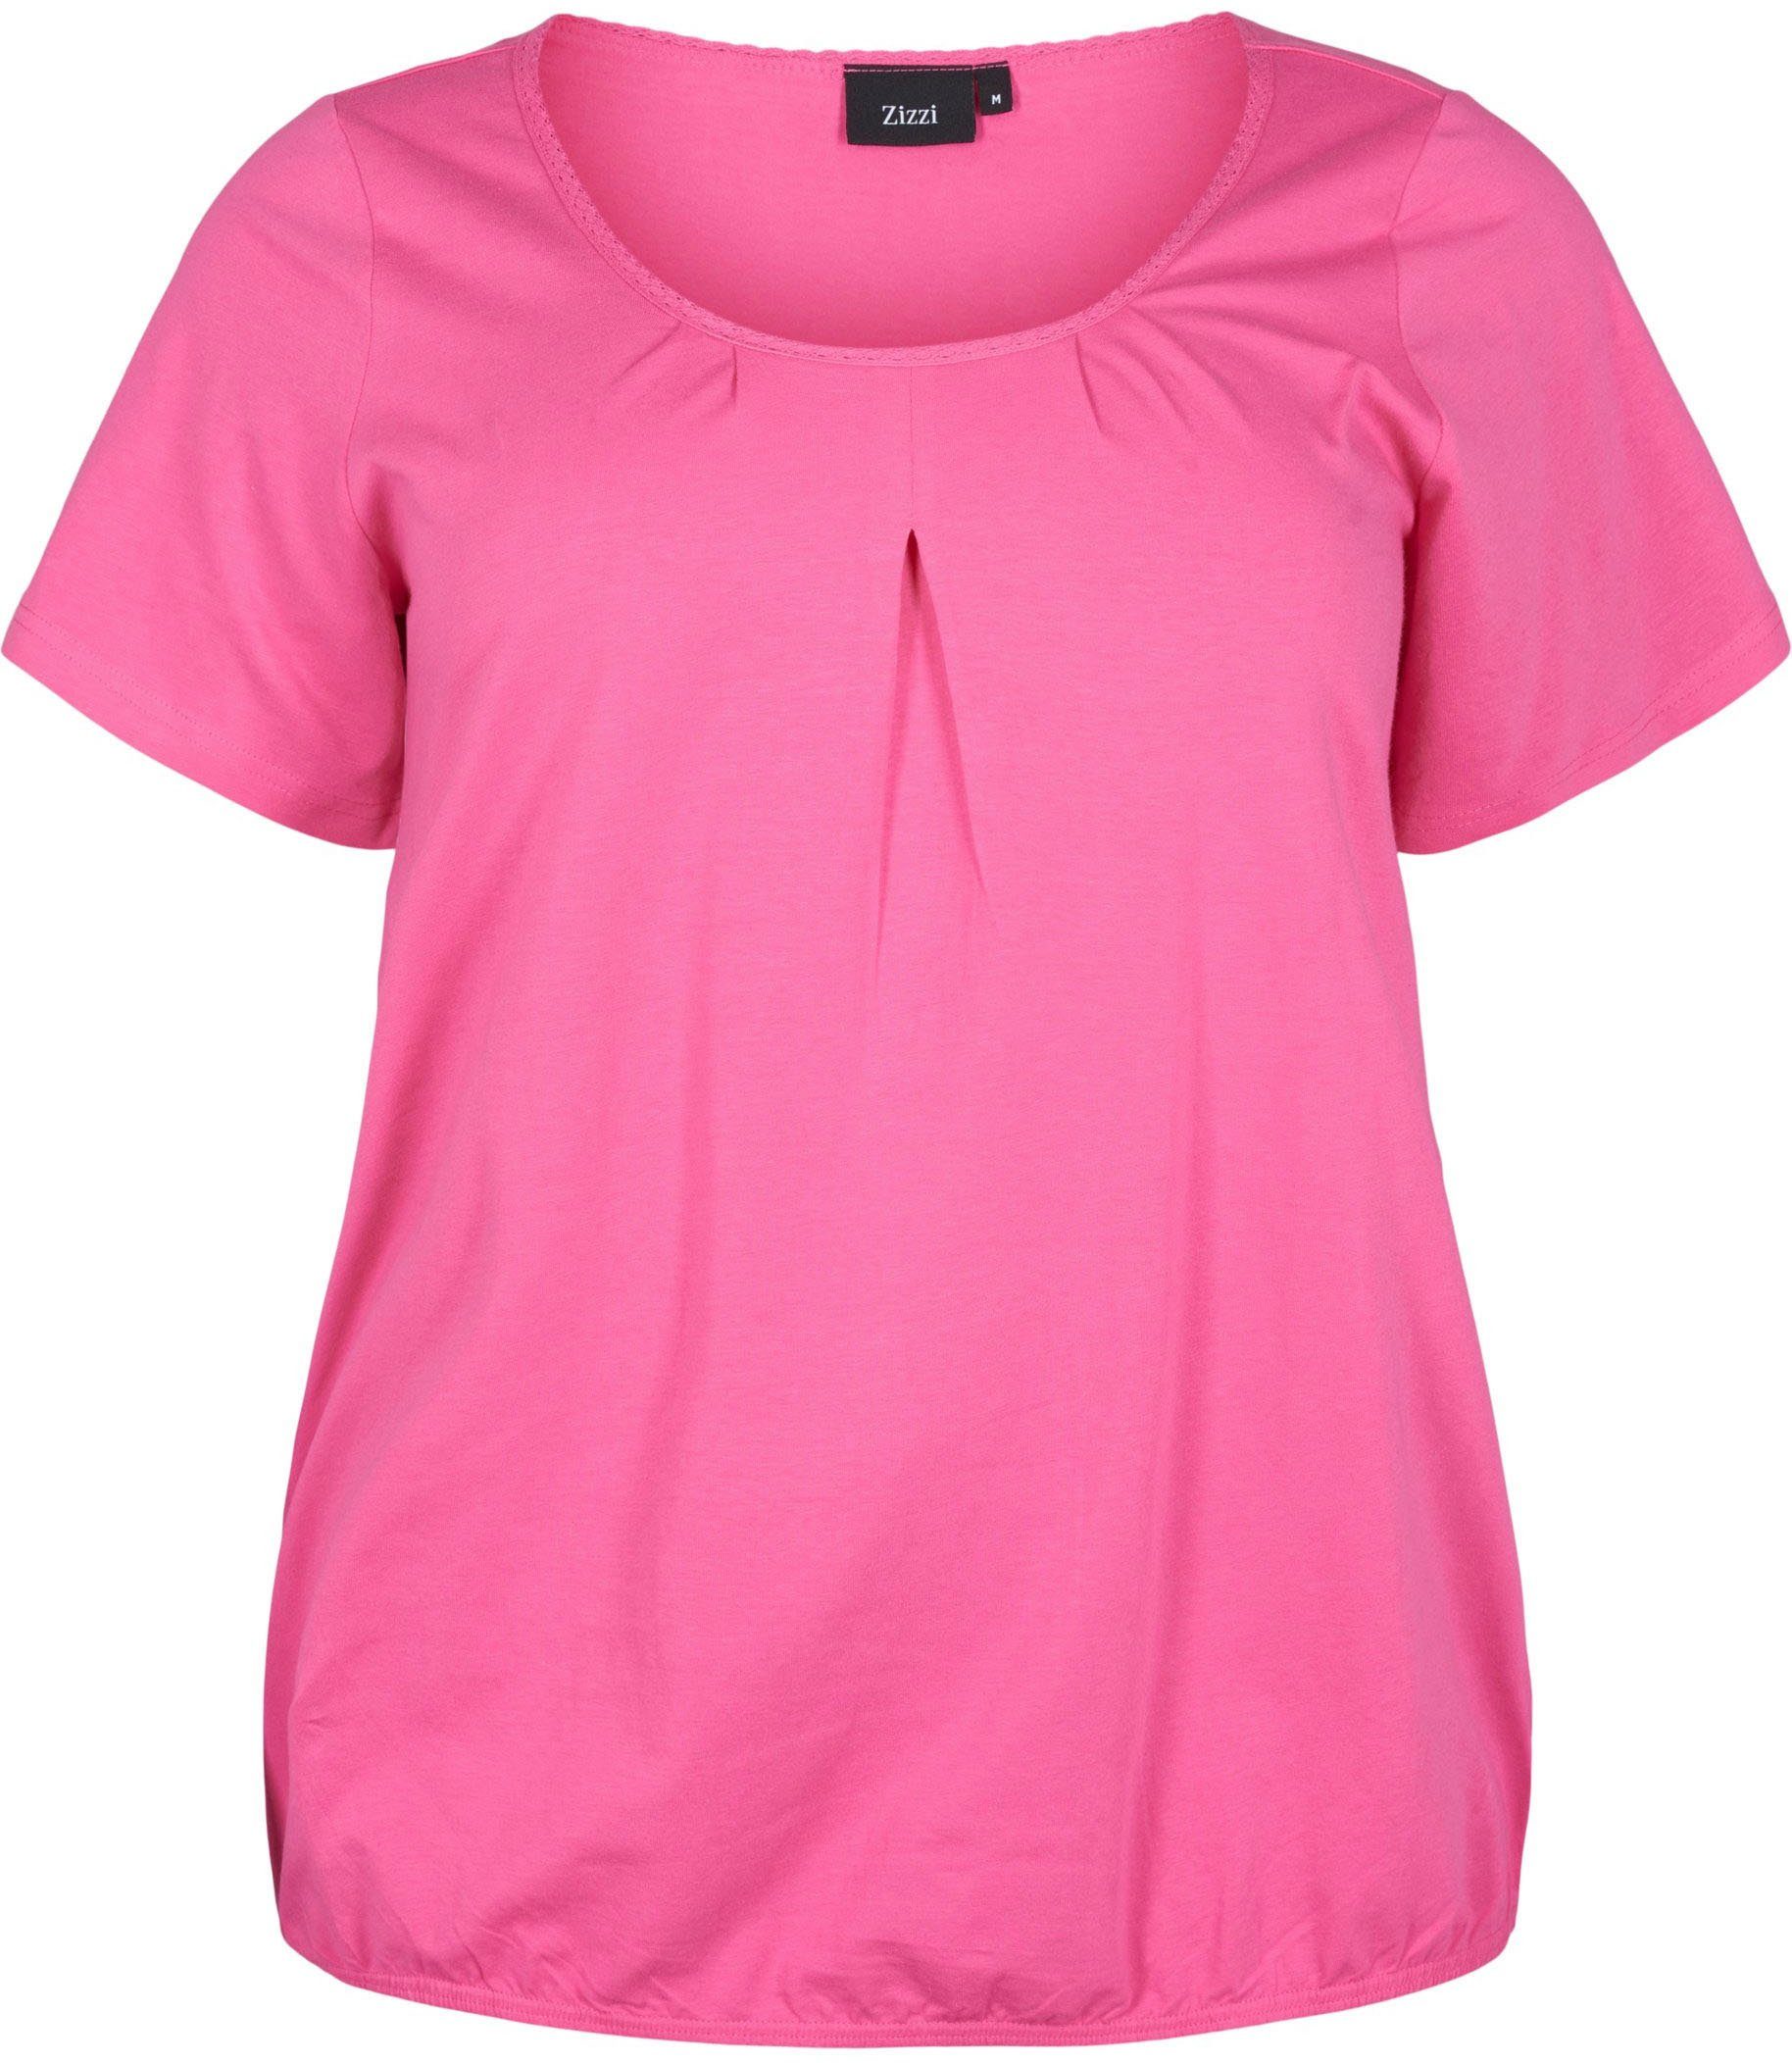 Zizzi Zizzi Pink VPOLLY Shocking T-Shirt